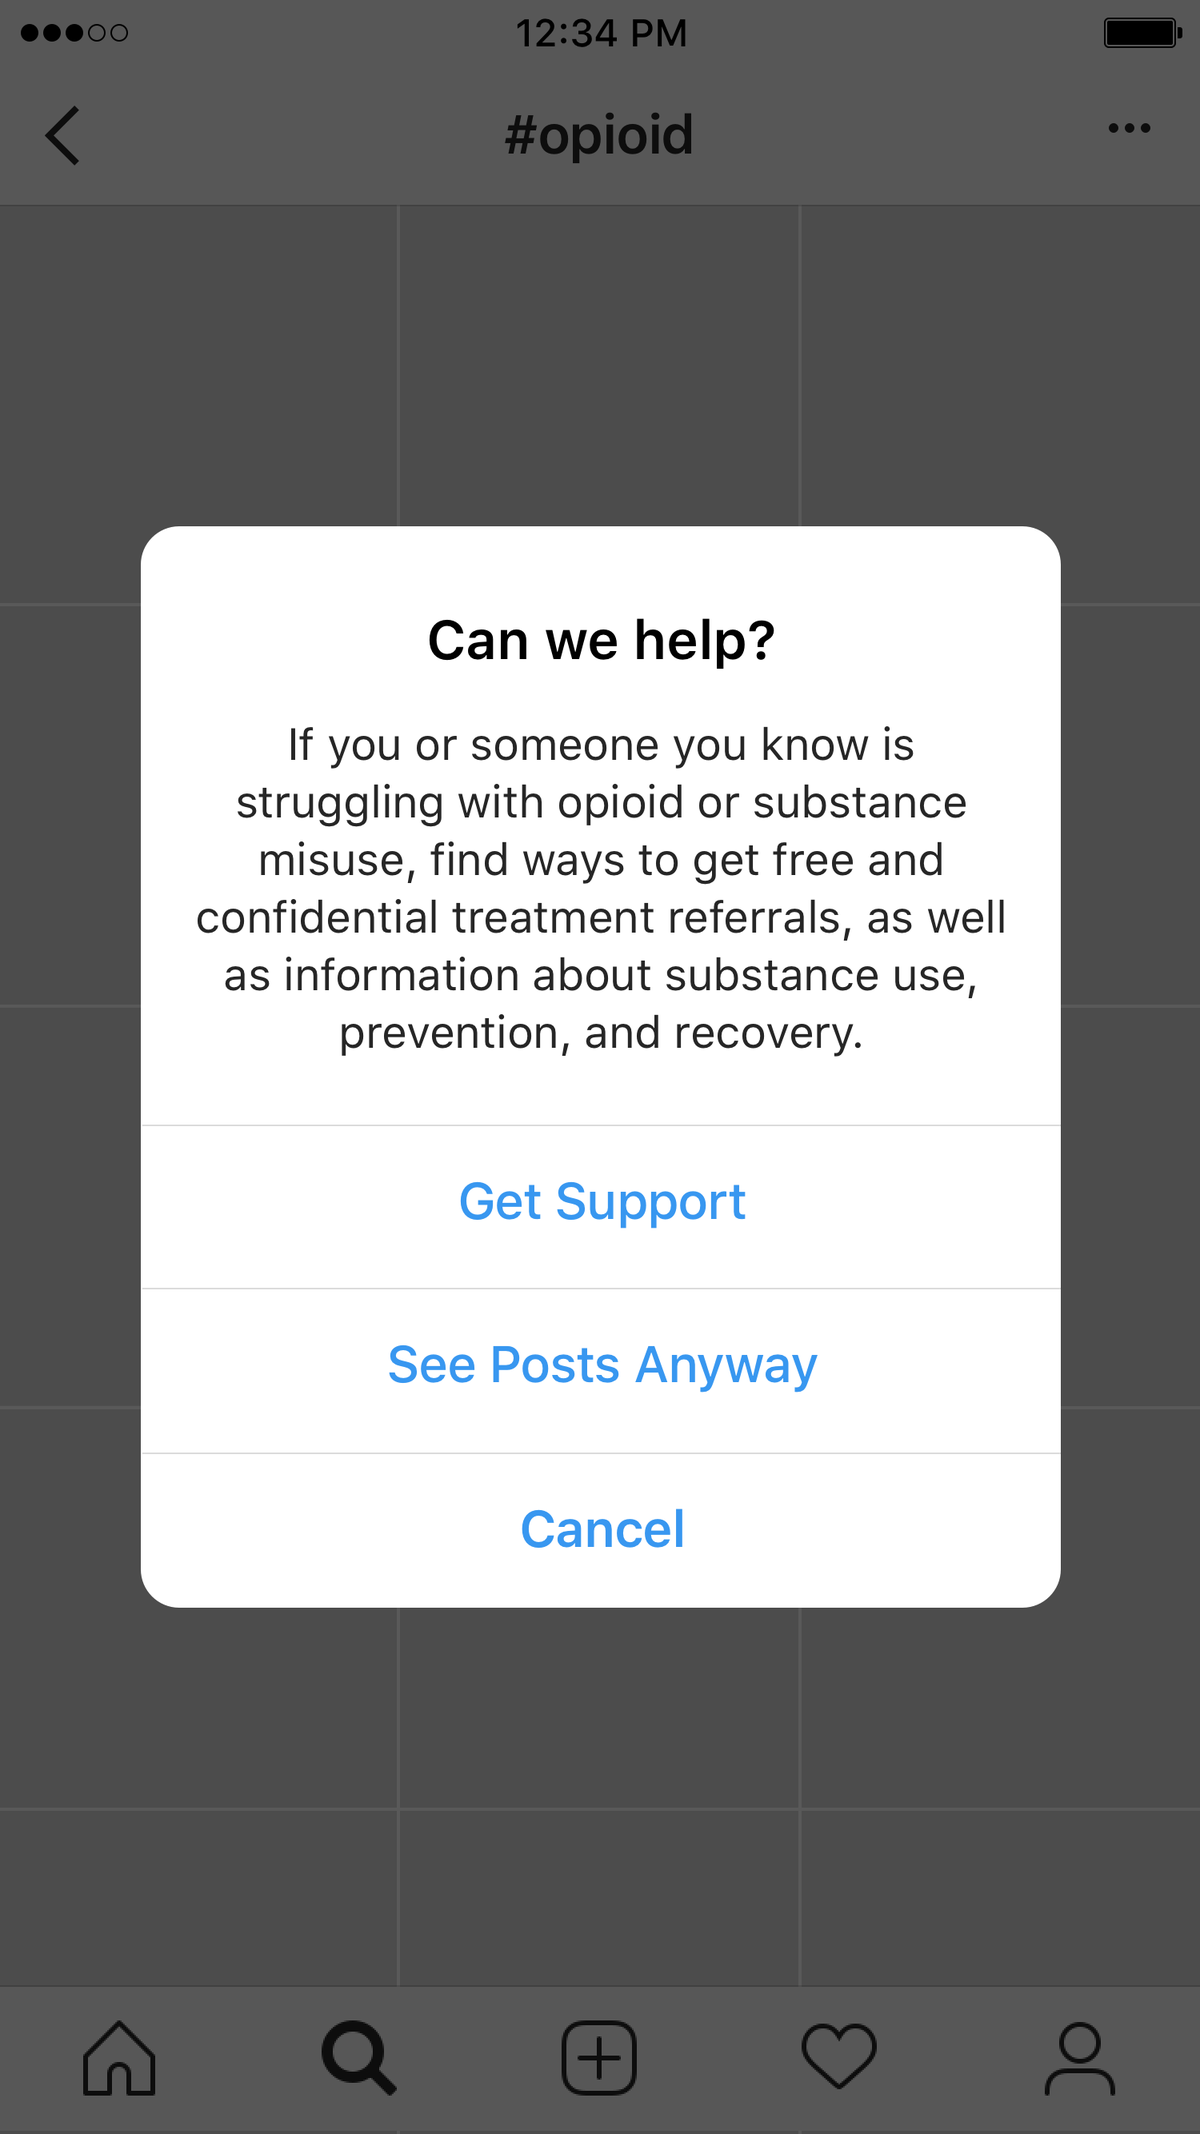 Instagram mostrerà un pop-up 'Ricevi supporto' quando gli utenti cercano hashtag relativi agli oppioidi